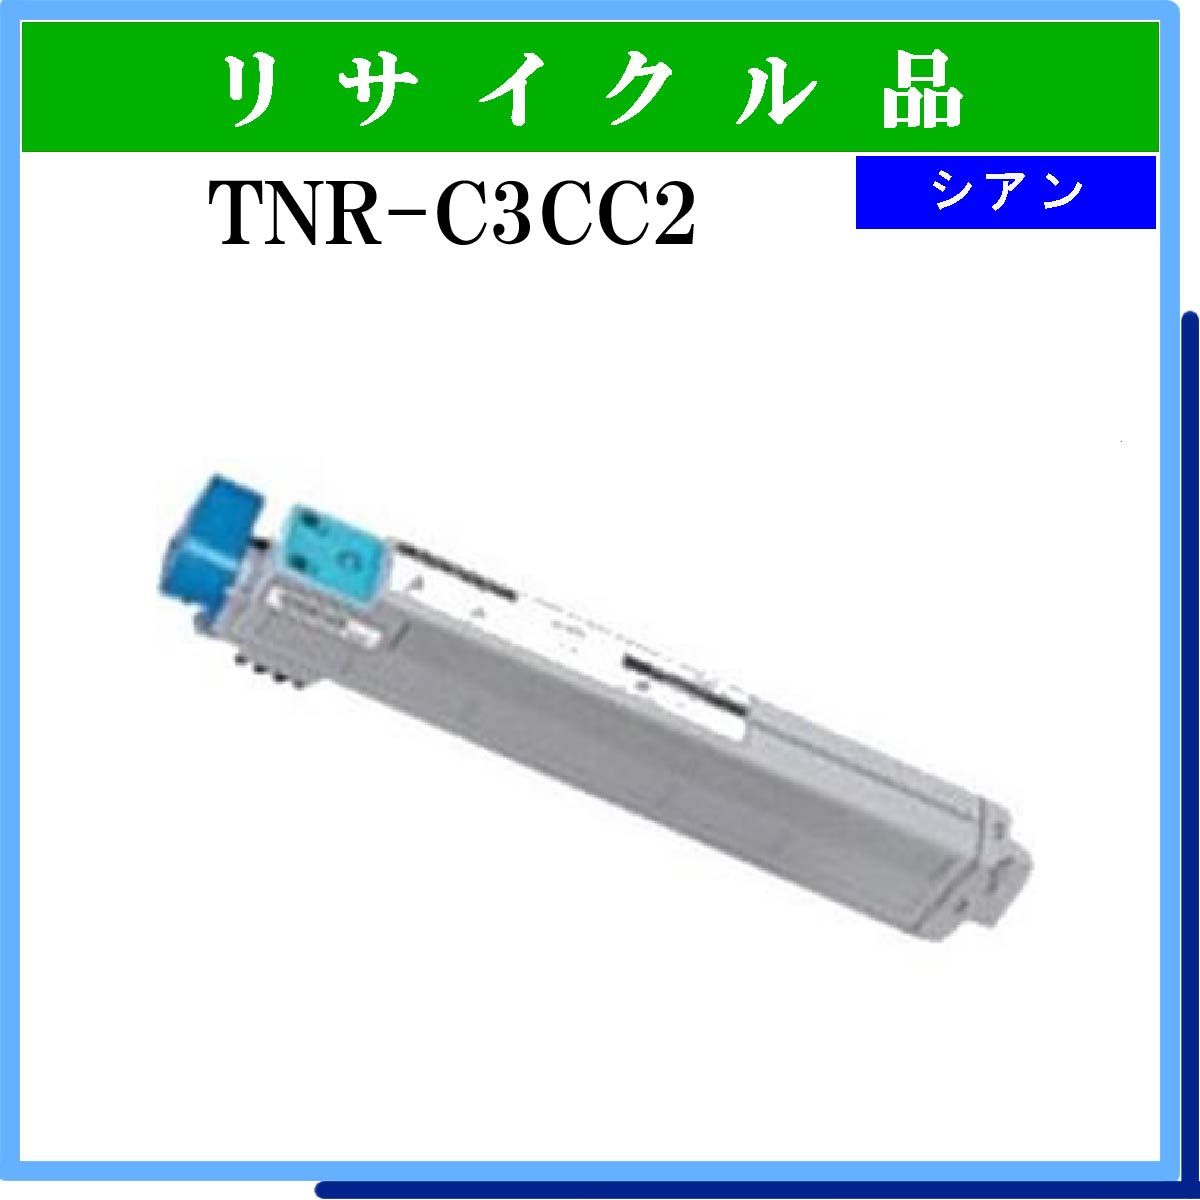 TNR-C3CC2